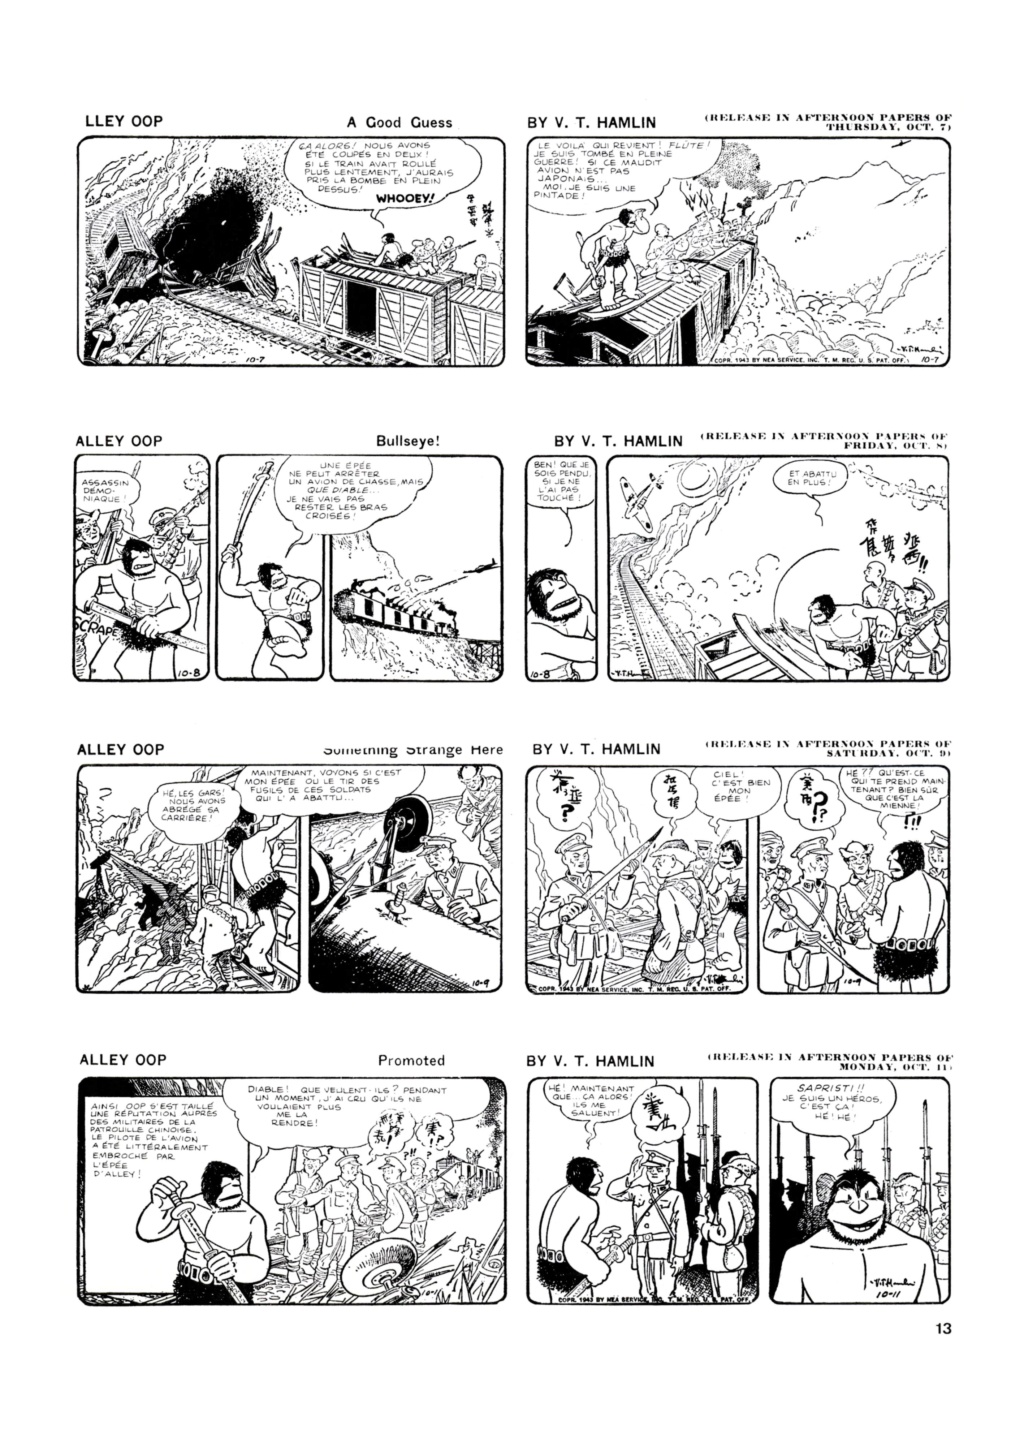 9ème Art, musée de la bande dessinée par Morris et Vankeer - Page 5 1322